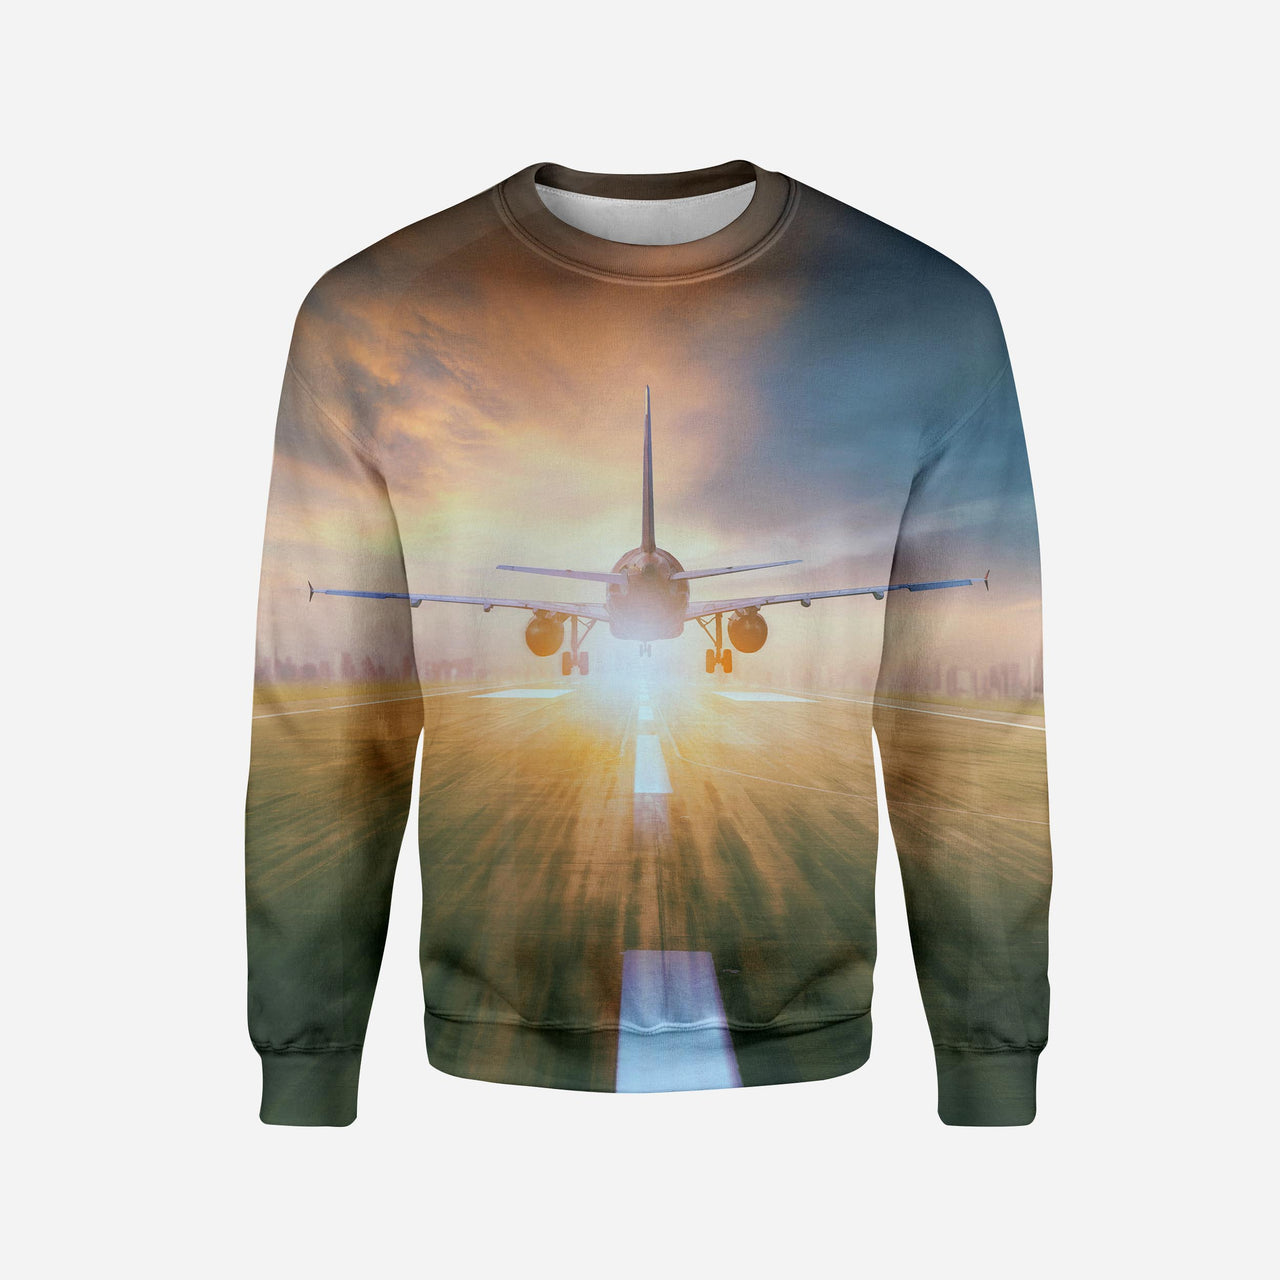 Airplane Flying Over Runway Printed 3D Sweatshirts